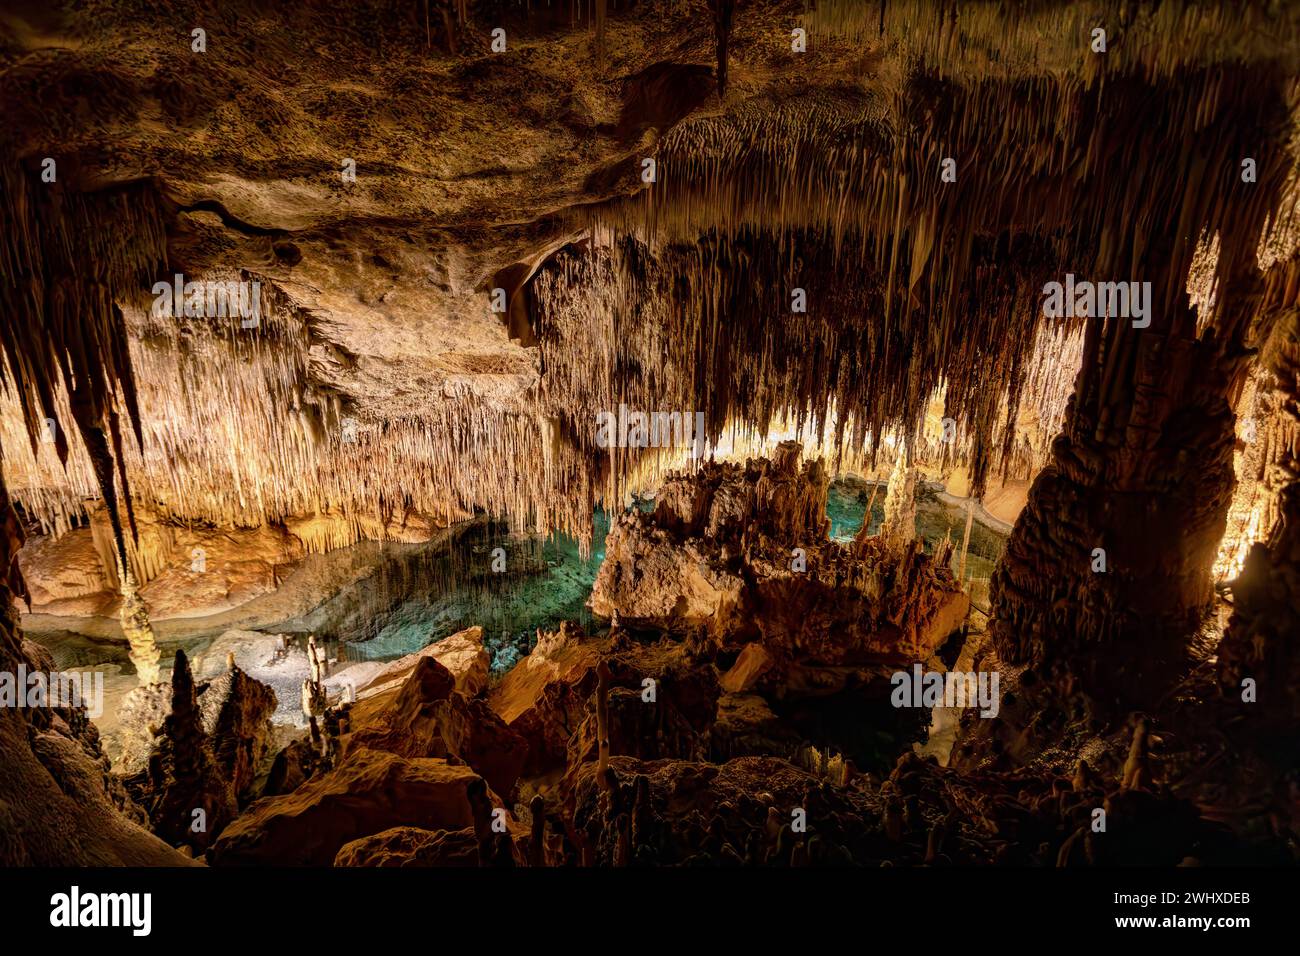 Grotte du Dragon, Coves del Drach, Cuevas del Drach. Porto Cristo. Îles Baléares Mallorca Espagne. Banque D'Images